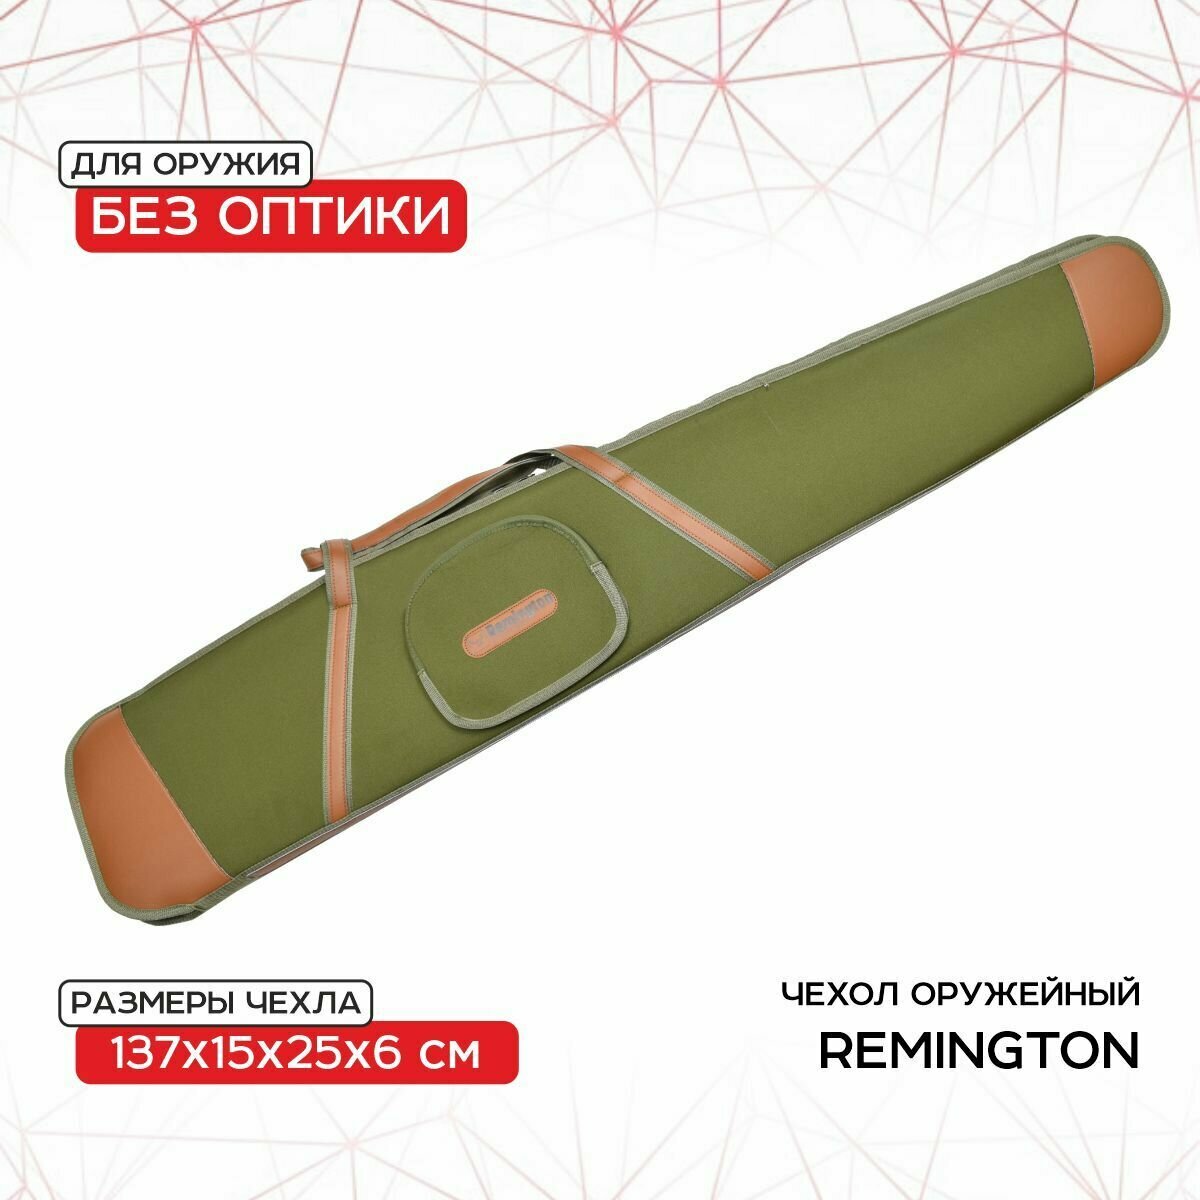 Чехол оружейный Remington без оптики 137x15x25x6 (зеленый) GB-9050B137